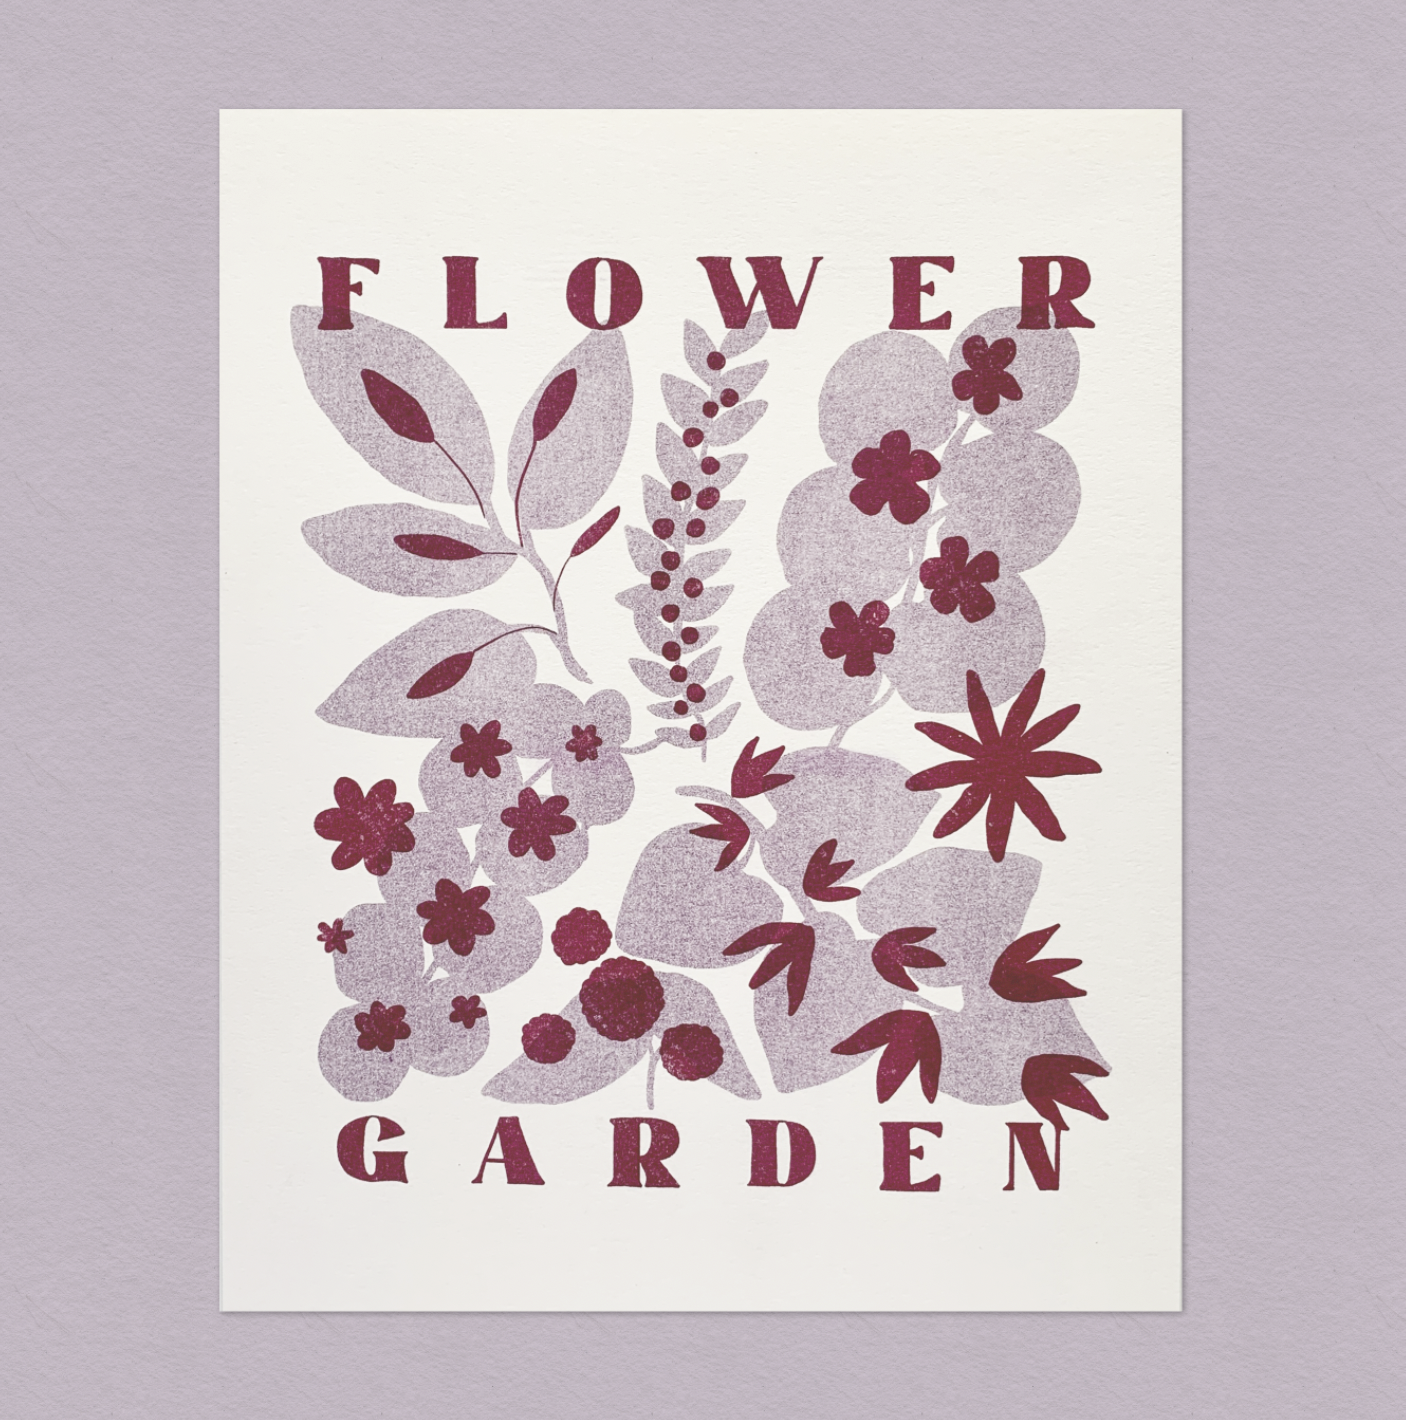 Riso Print: Flower Garden